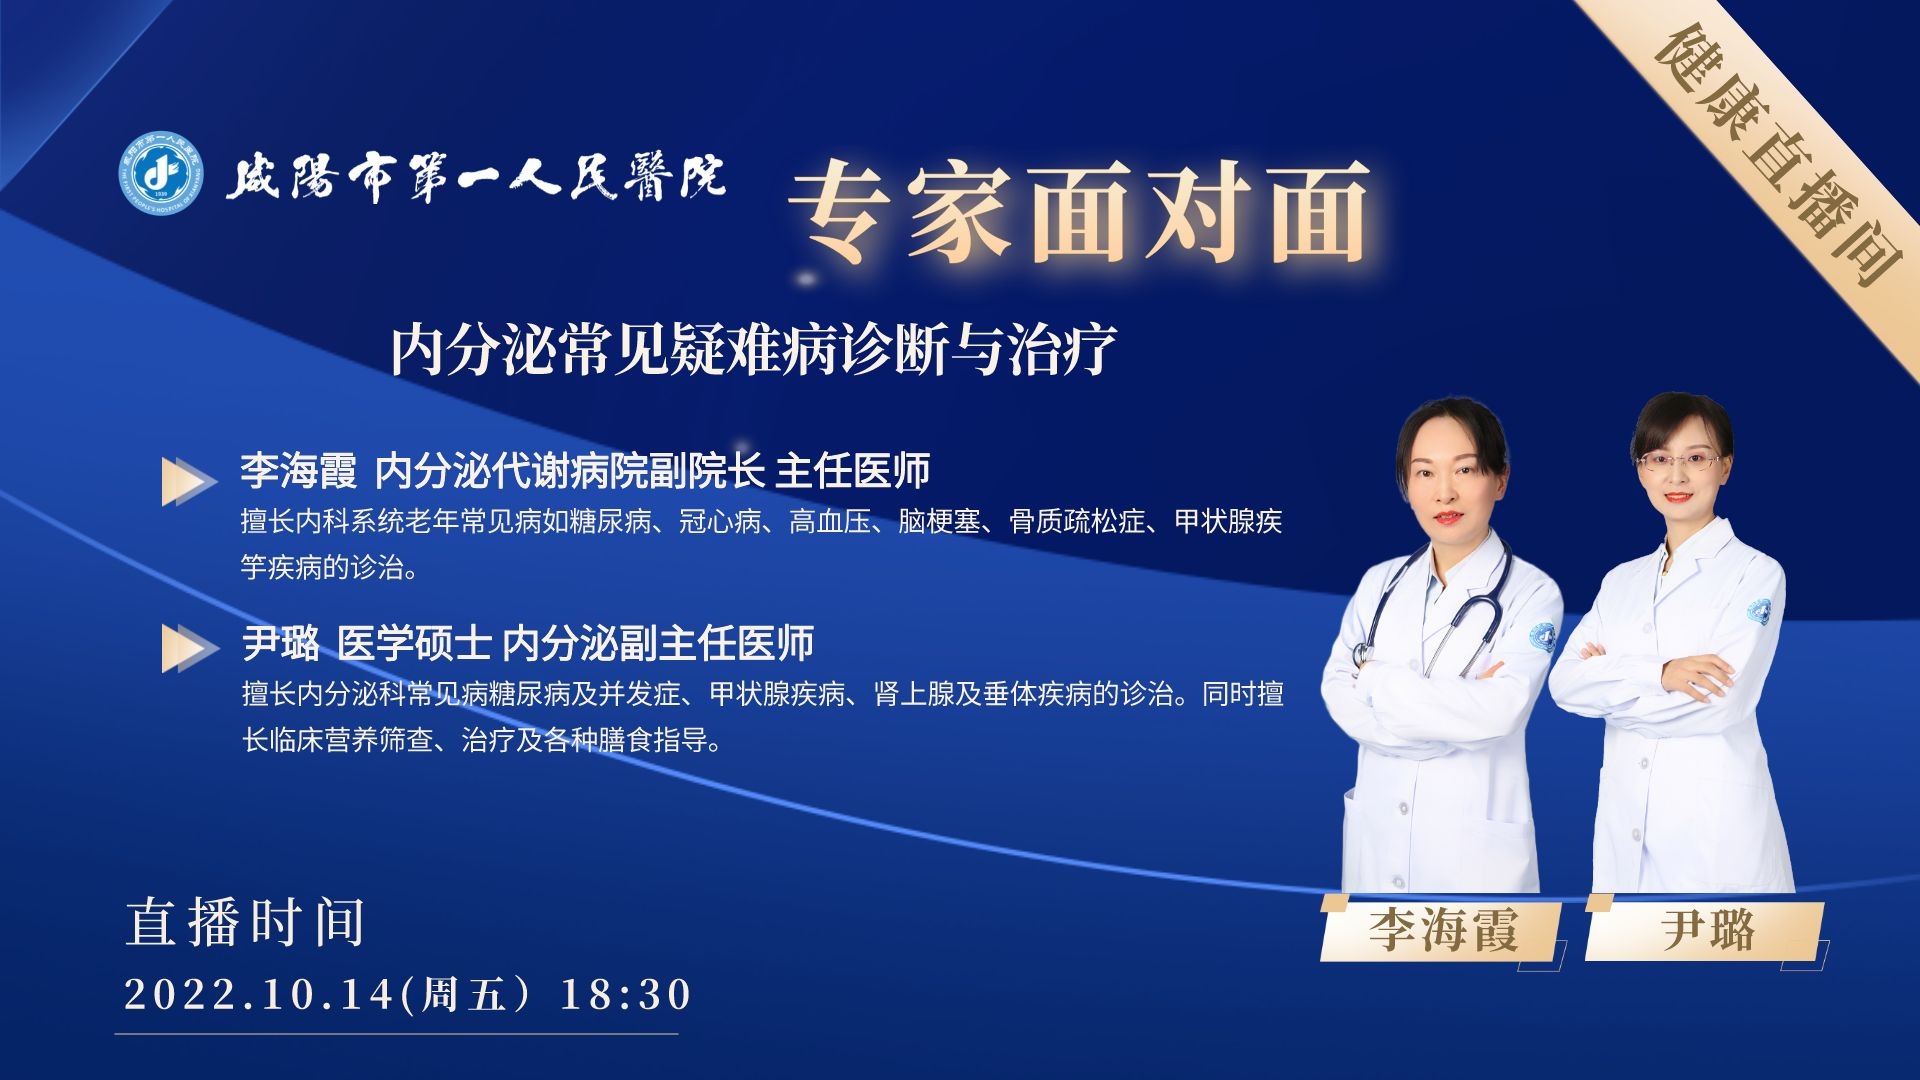 【直播预告】咸阳市第一人民医院内分泌常见疑难病诊断与治疗